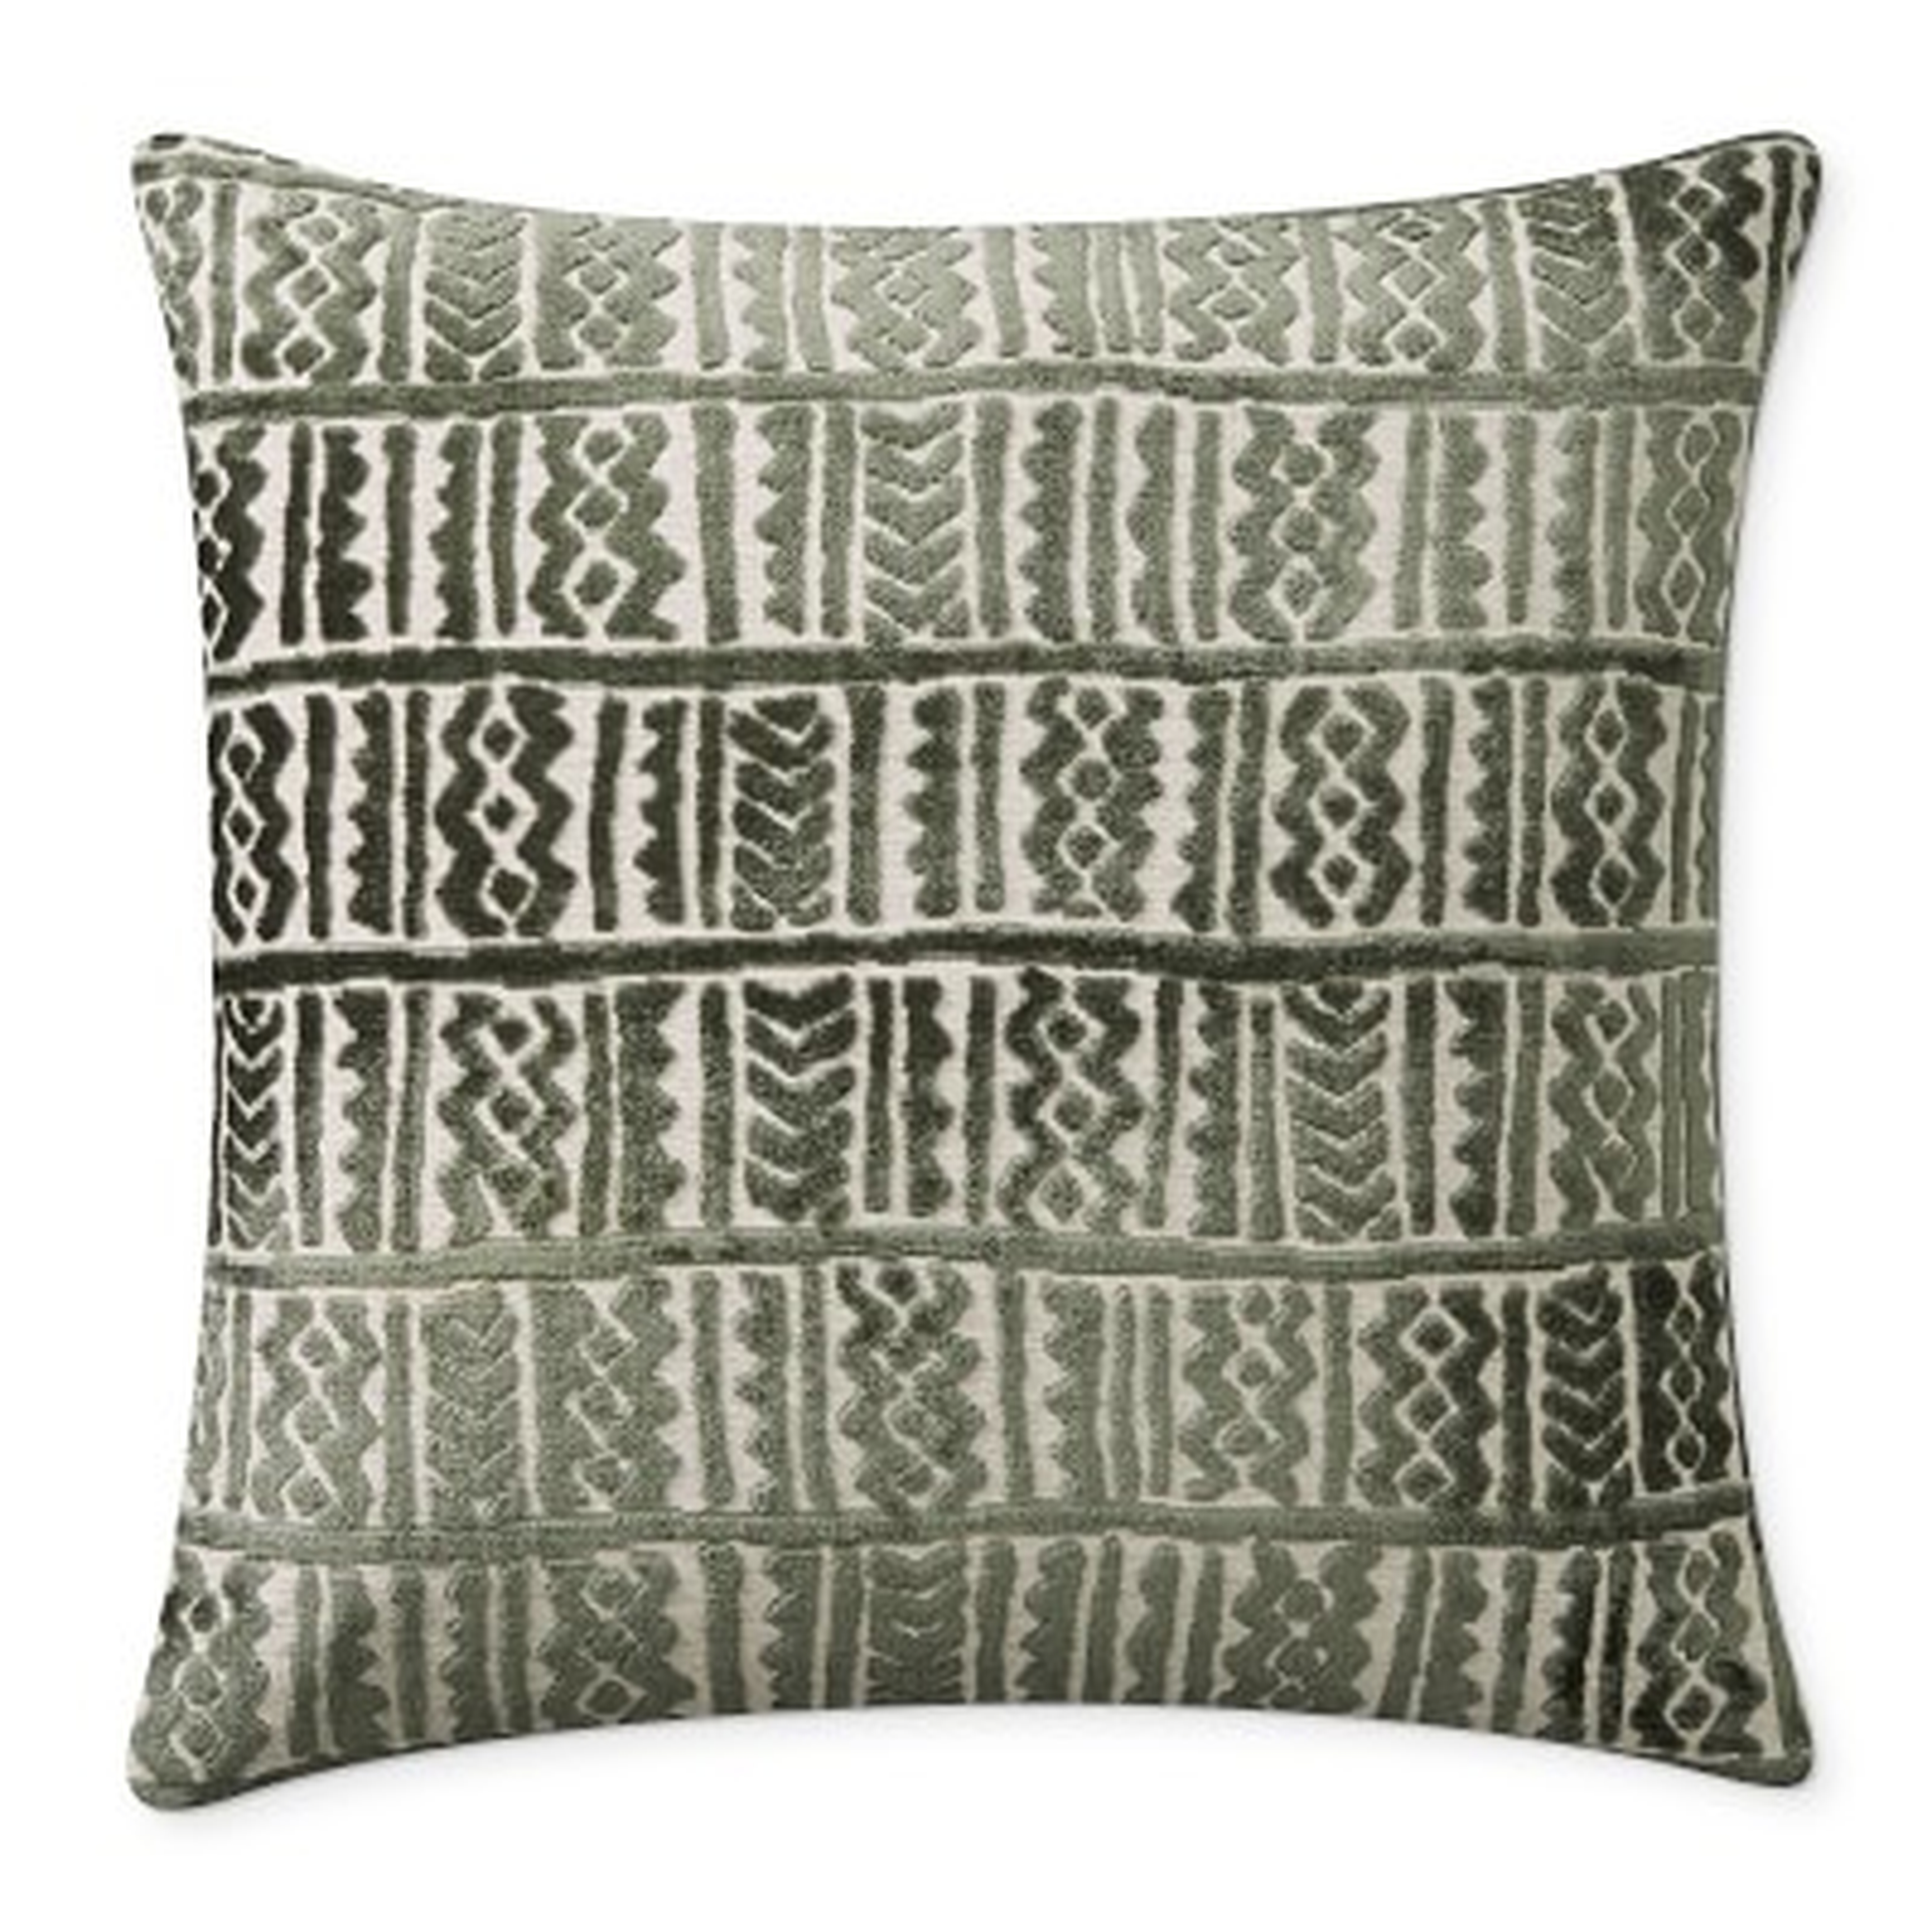 Aswan Velvet Jacquard Pillow Cover, 22" X 22", Green - Williams Sonoma